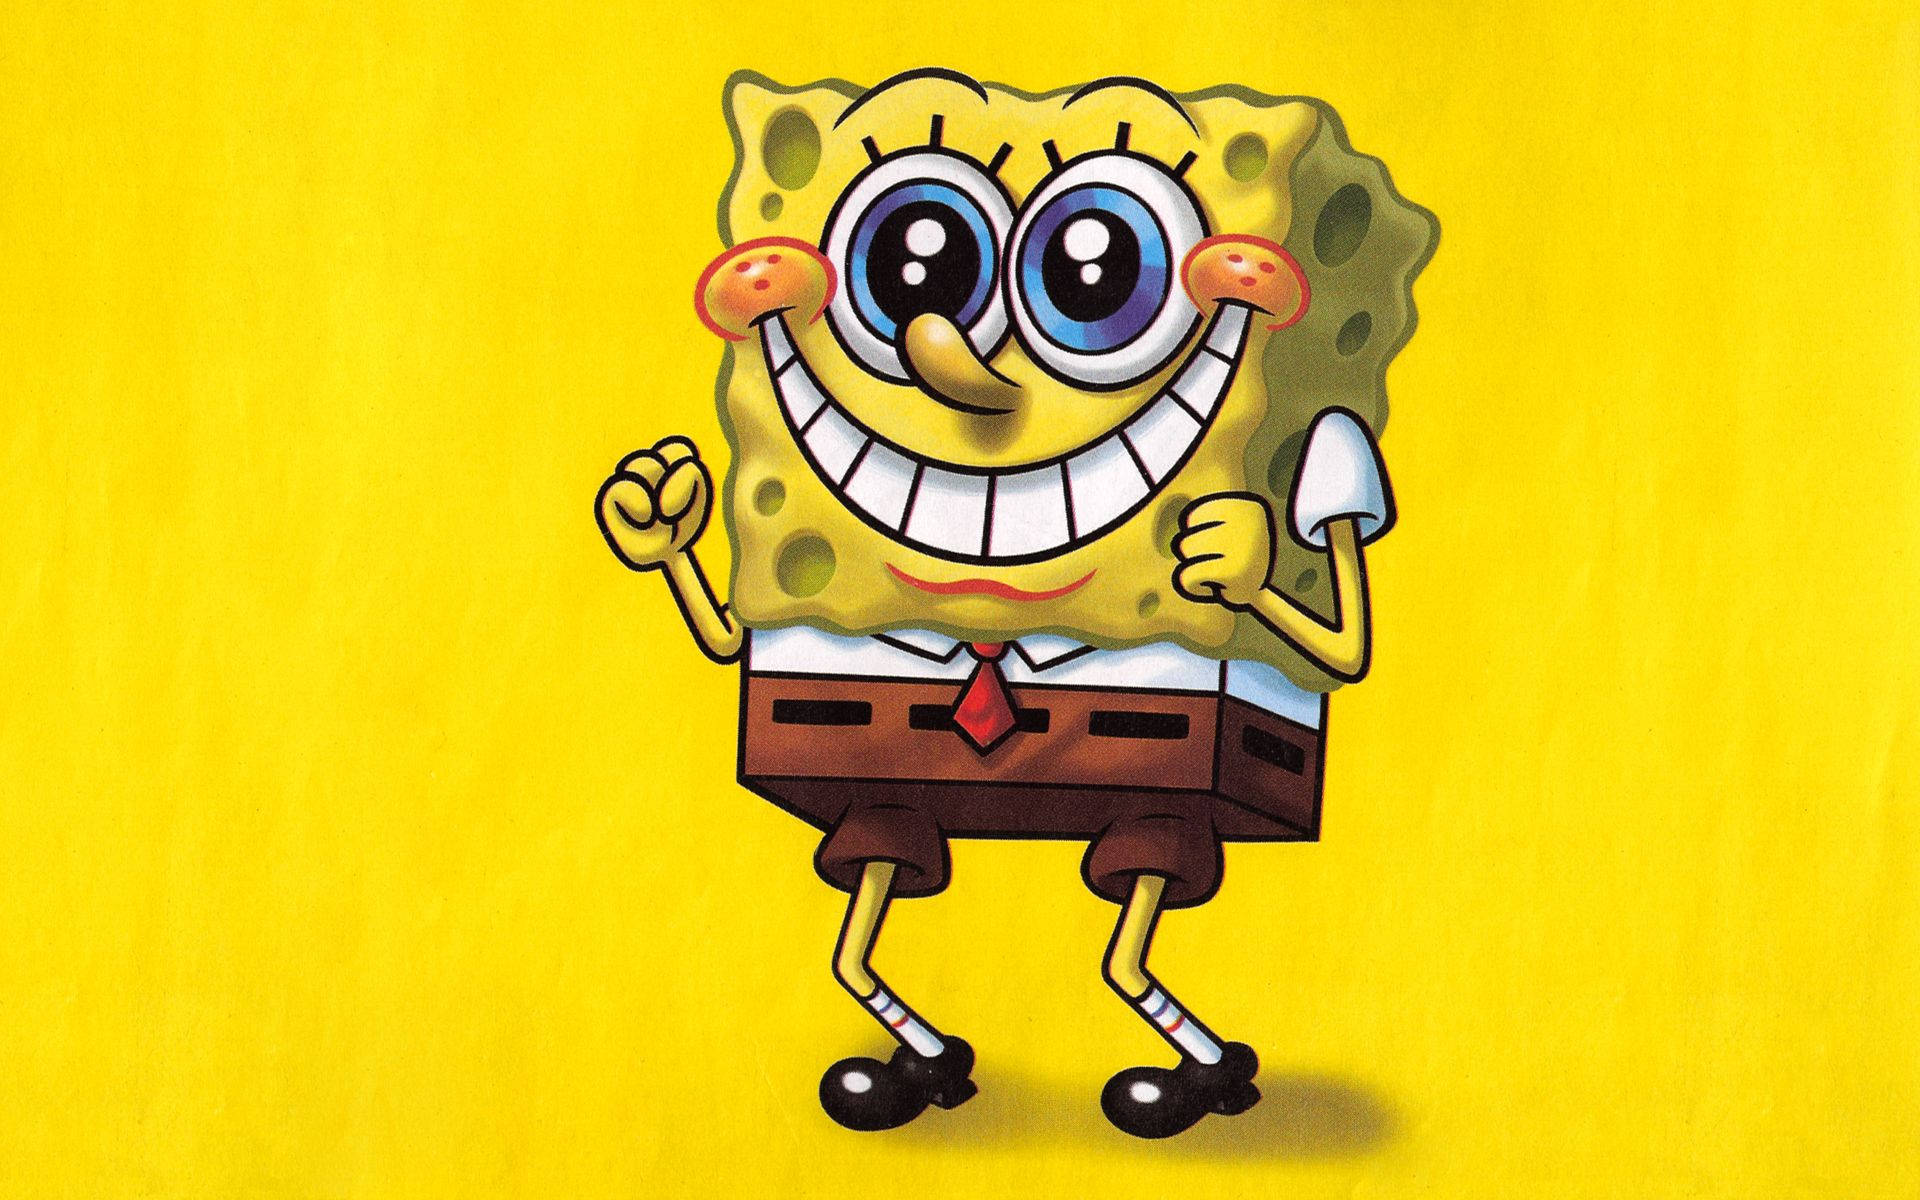 "Spongebob's signature smile!" Wallpaper